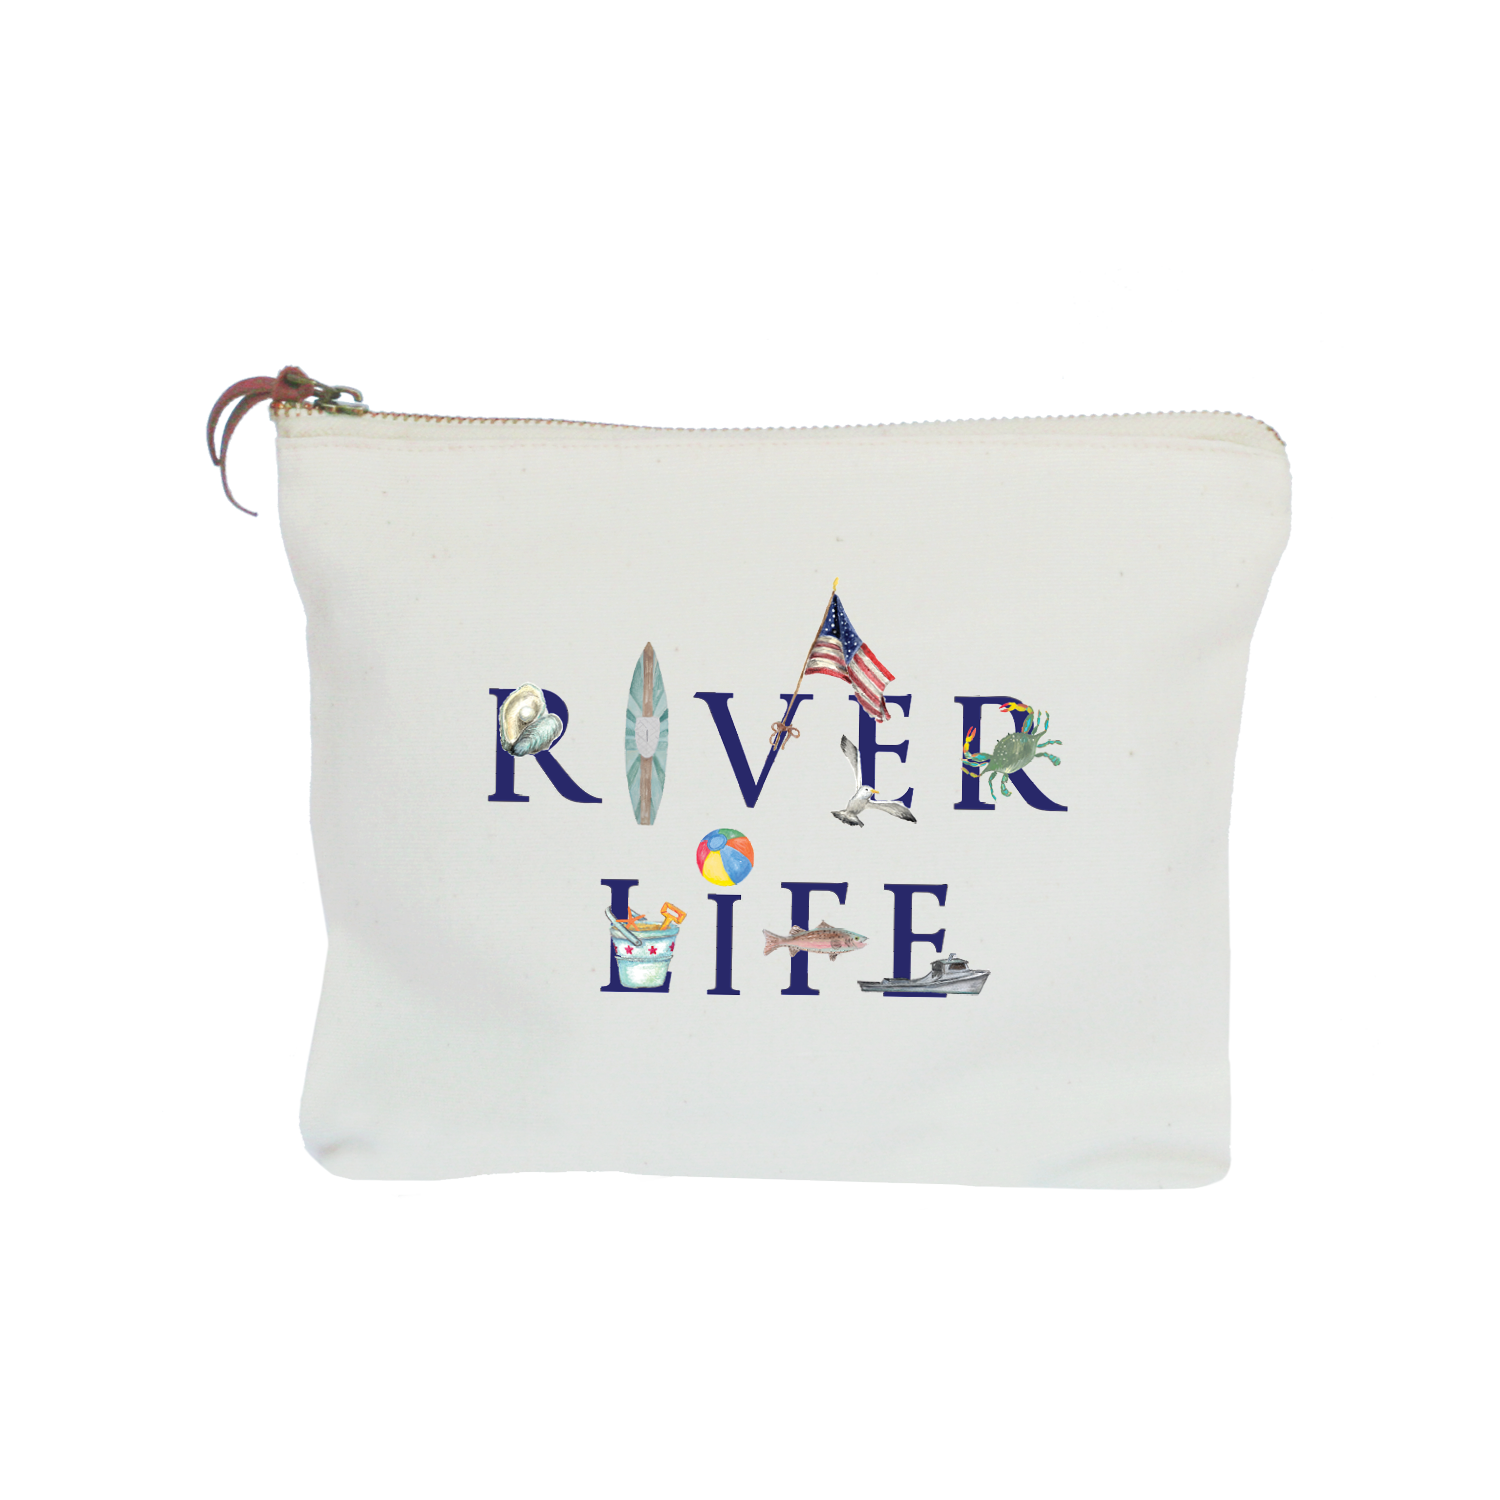 river life zipper pouch